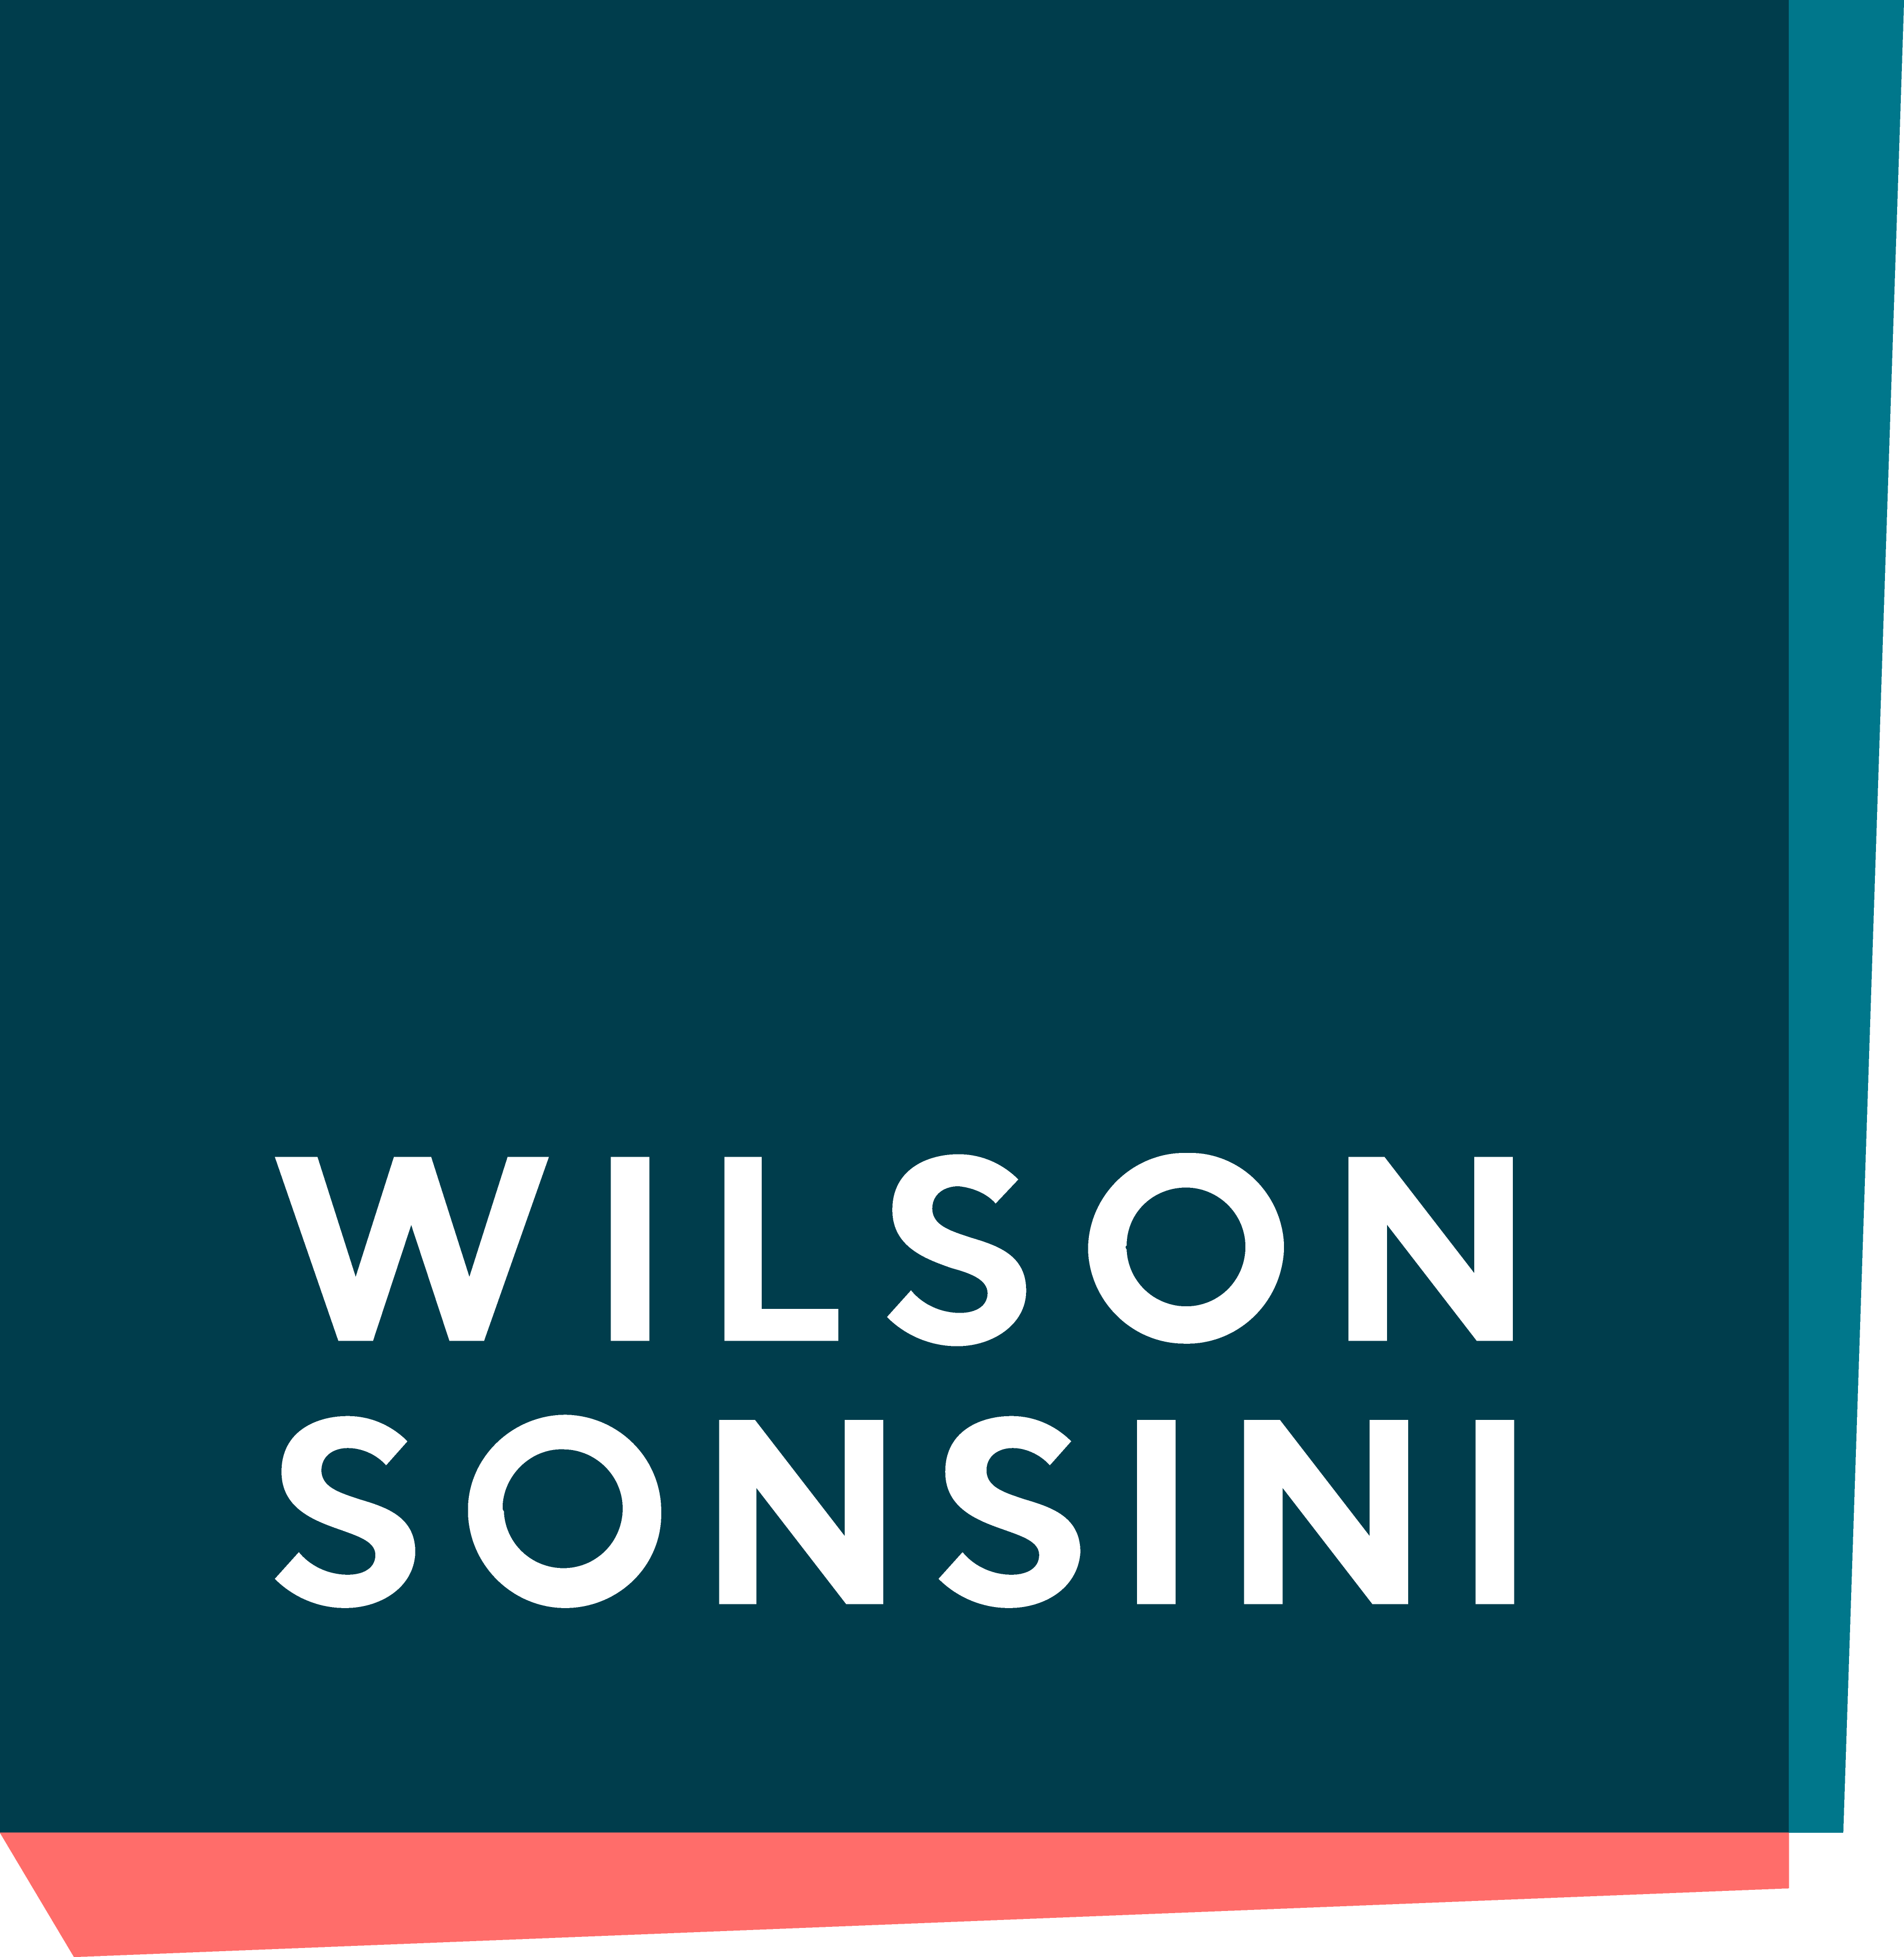 The logo for wilson sonsini.